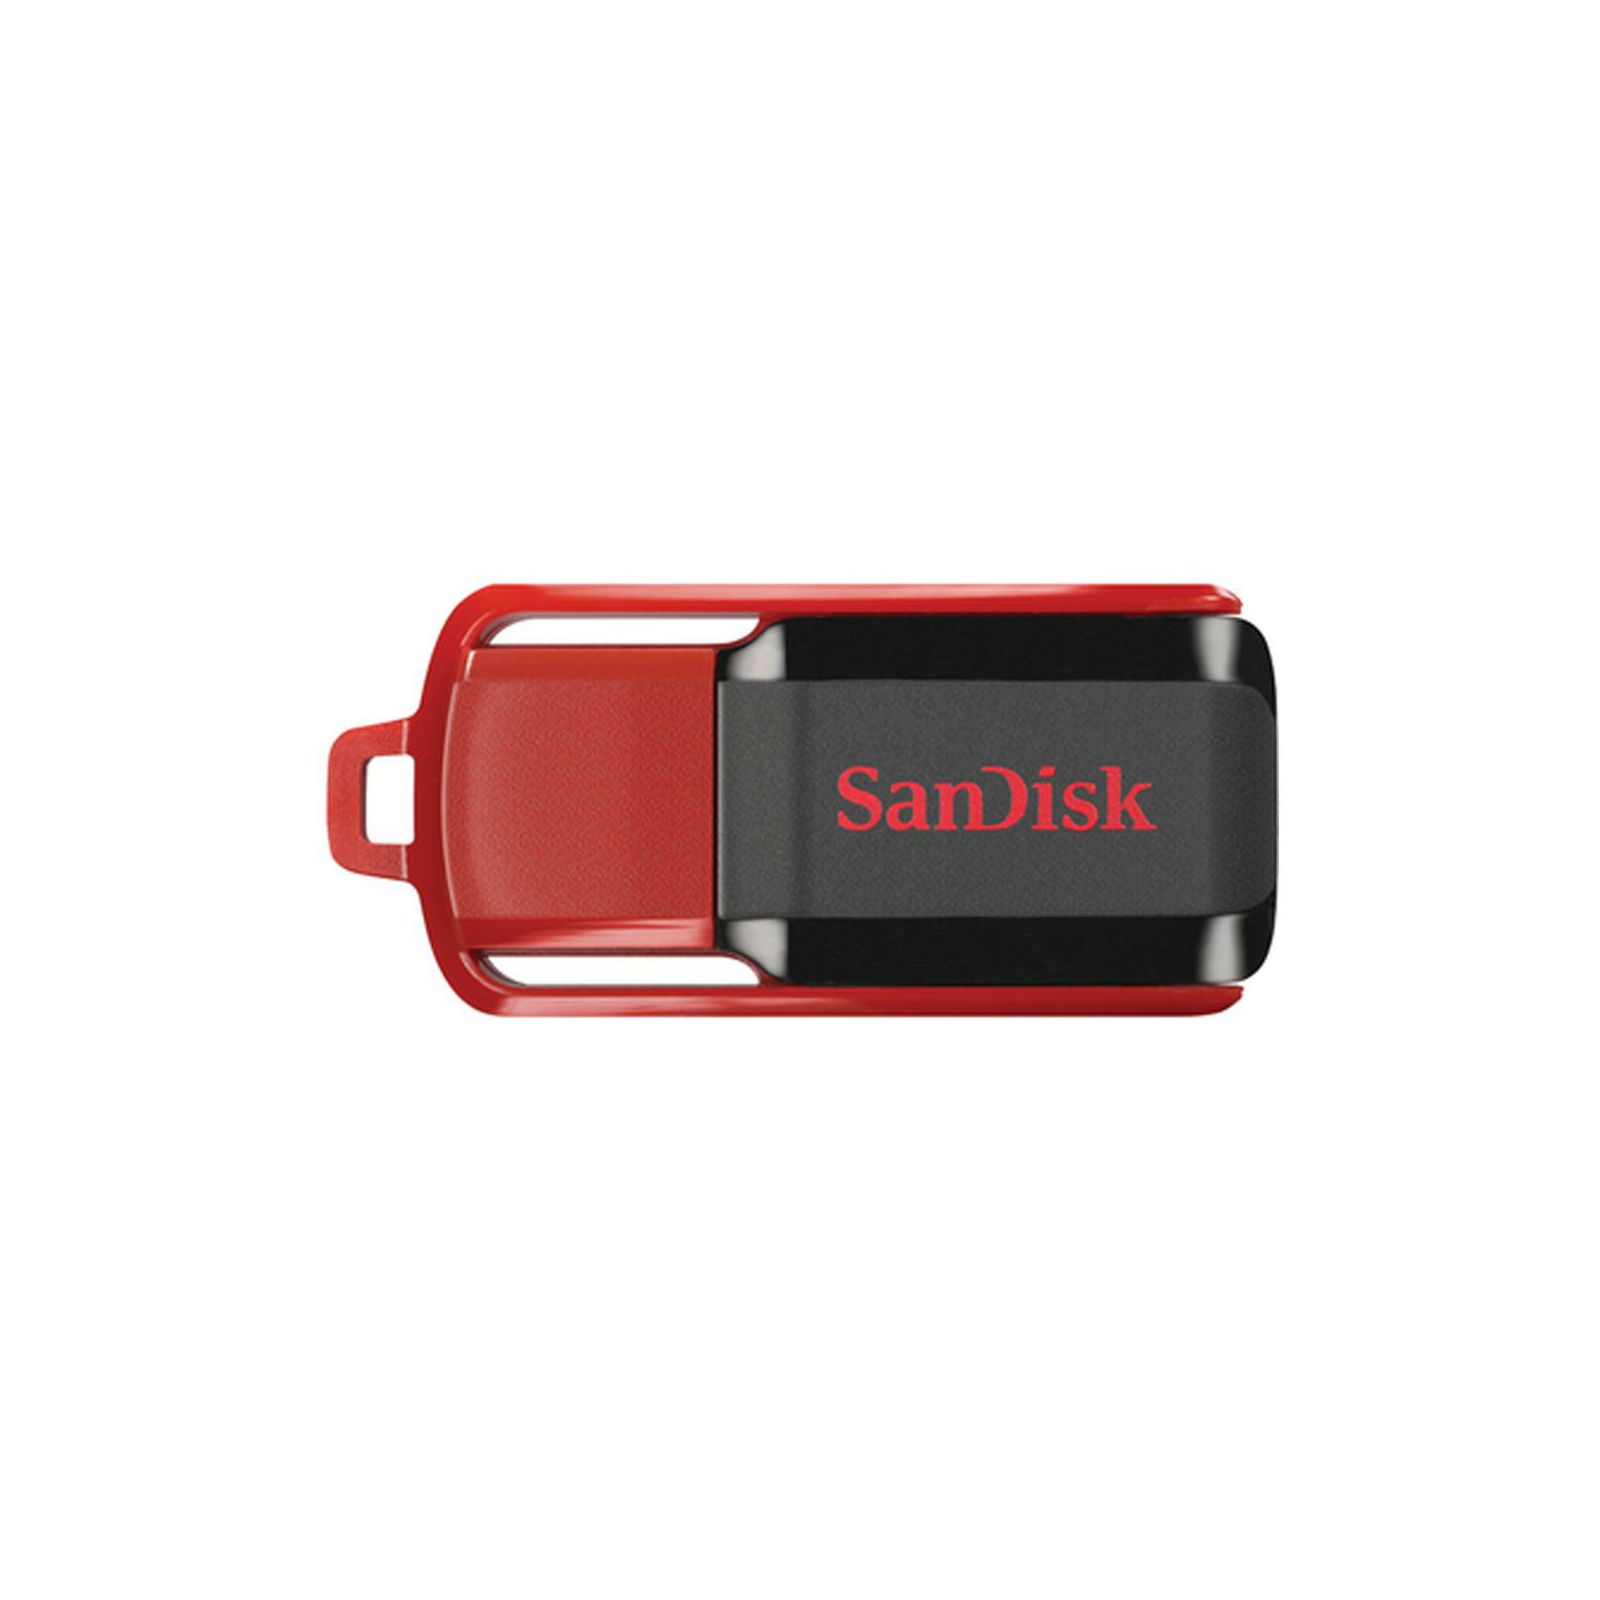 Sandisk Cruzer Switch 16GB SDCZ52-016G-B35